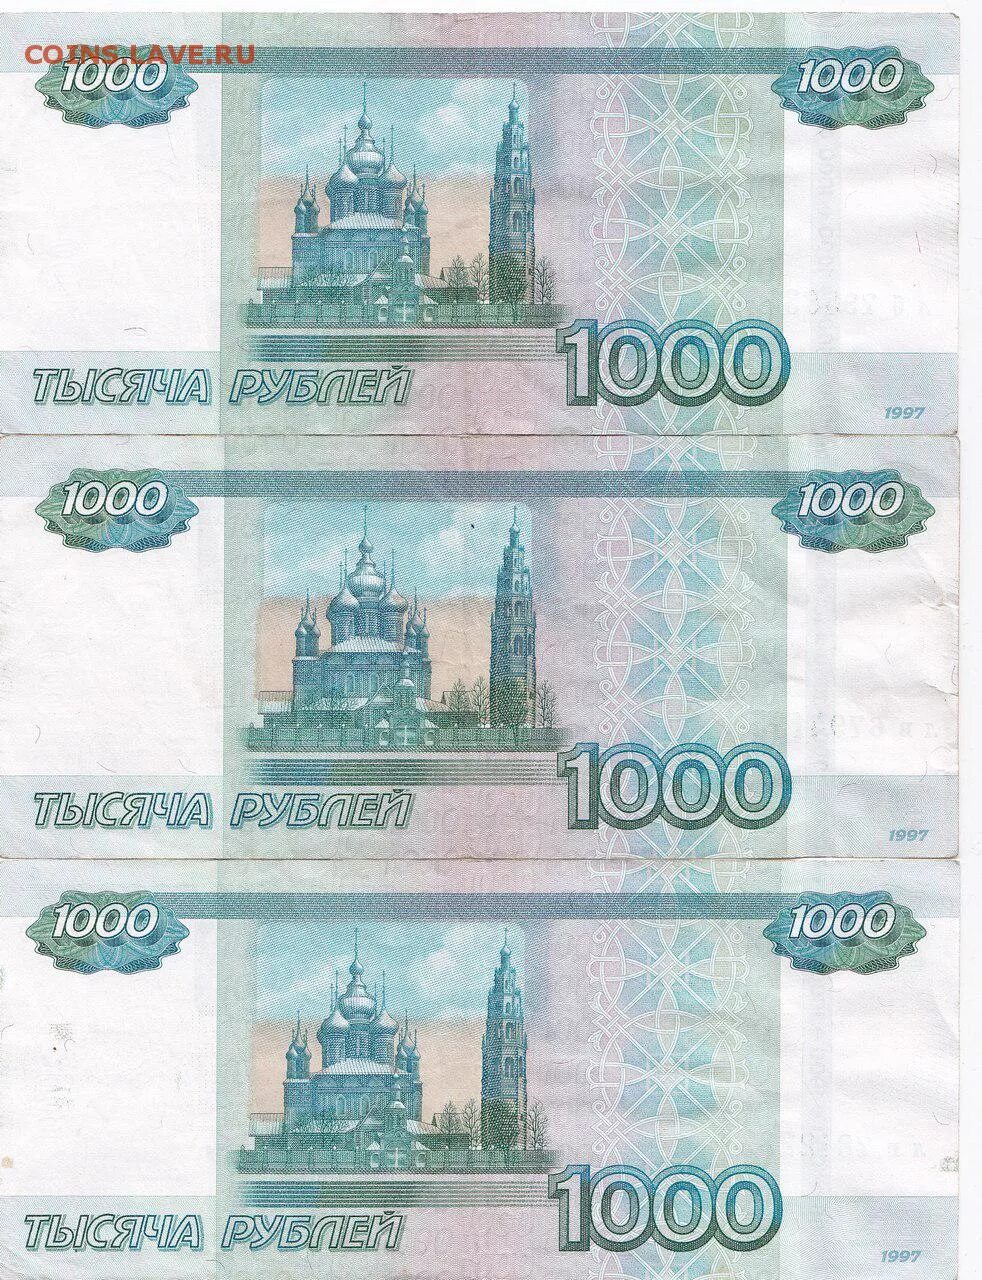 1000 Рублей купюра для печати. Тысяча рублей для печати. 1000 Рублей печать. Распечатка 1000 рублей. 1000 1 ру